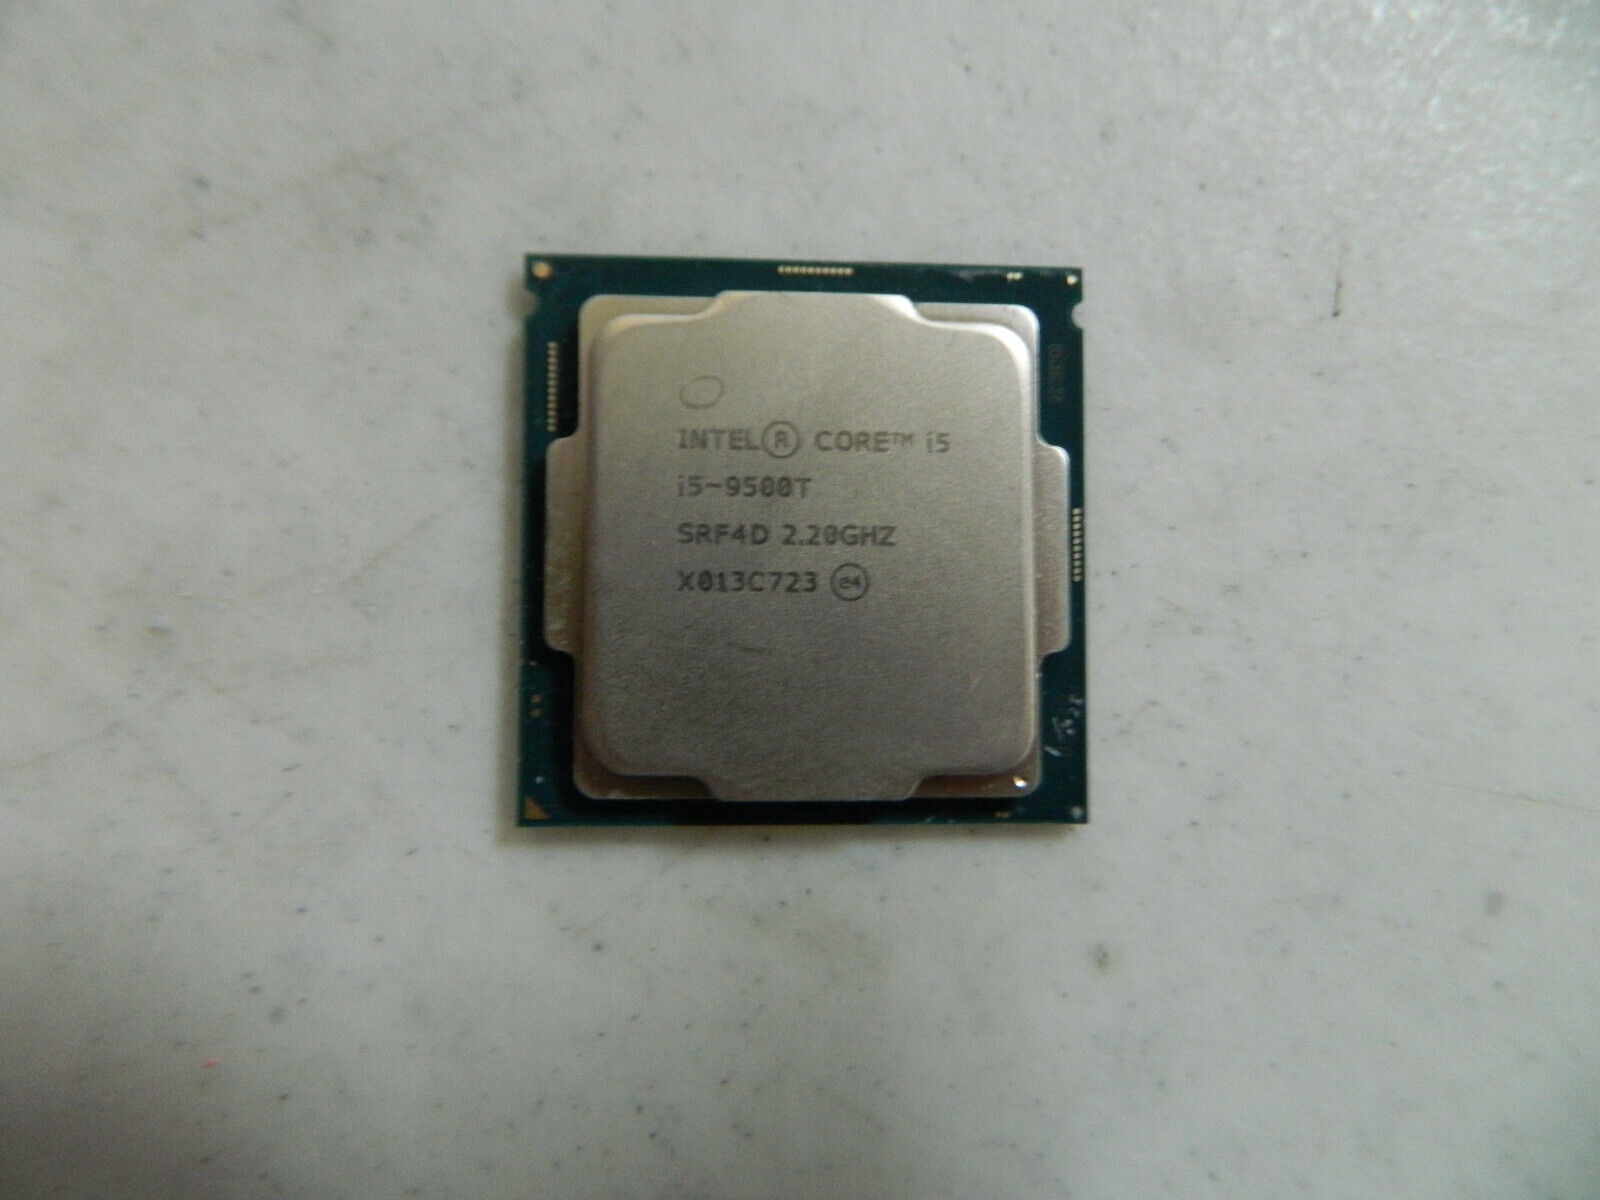 [ Lot of 9 ] Intel i5-9500T SRF4D 2.20 GHZ PROCESSOR